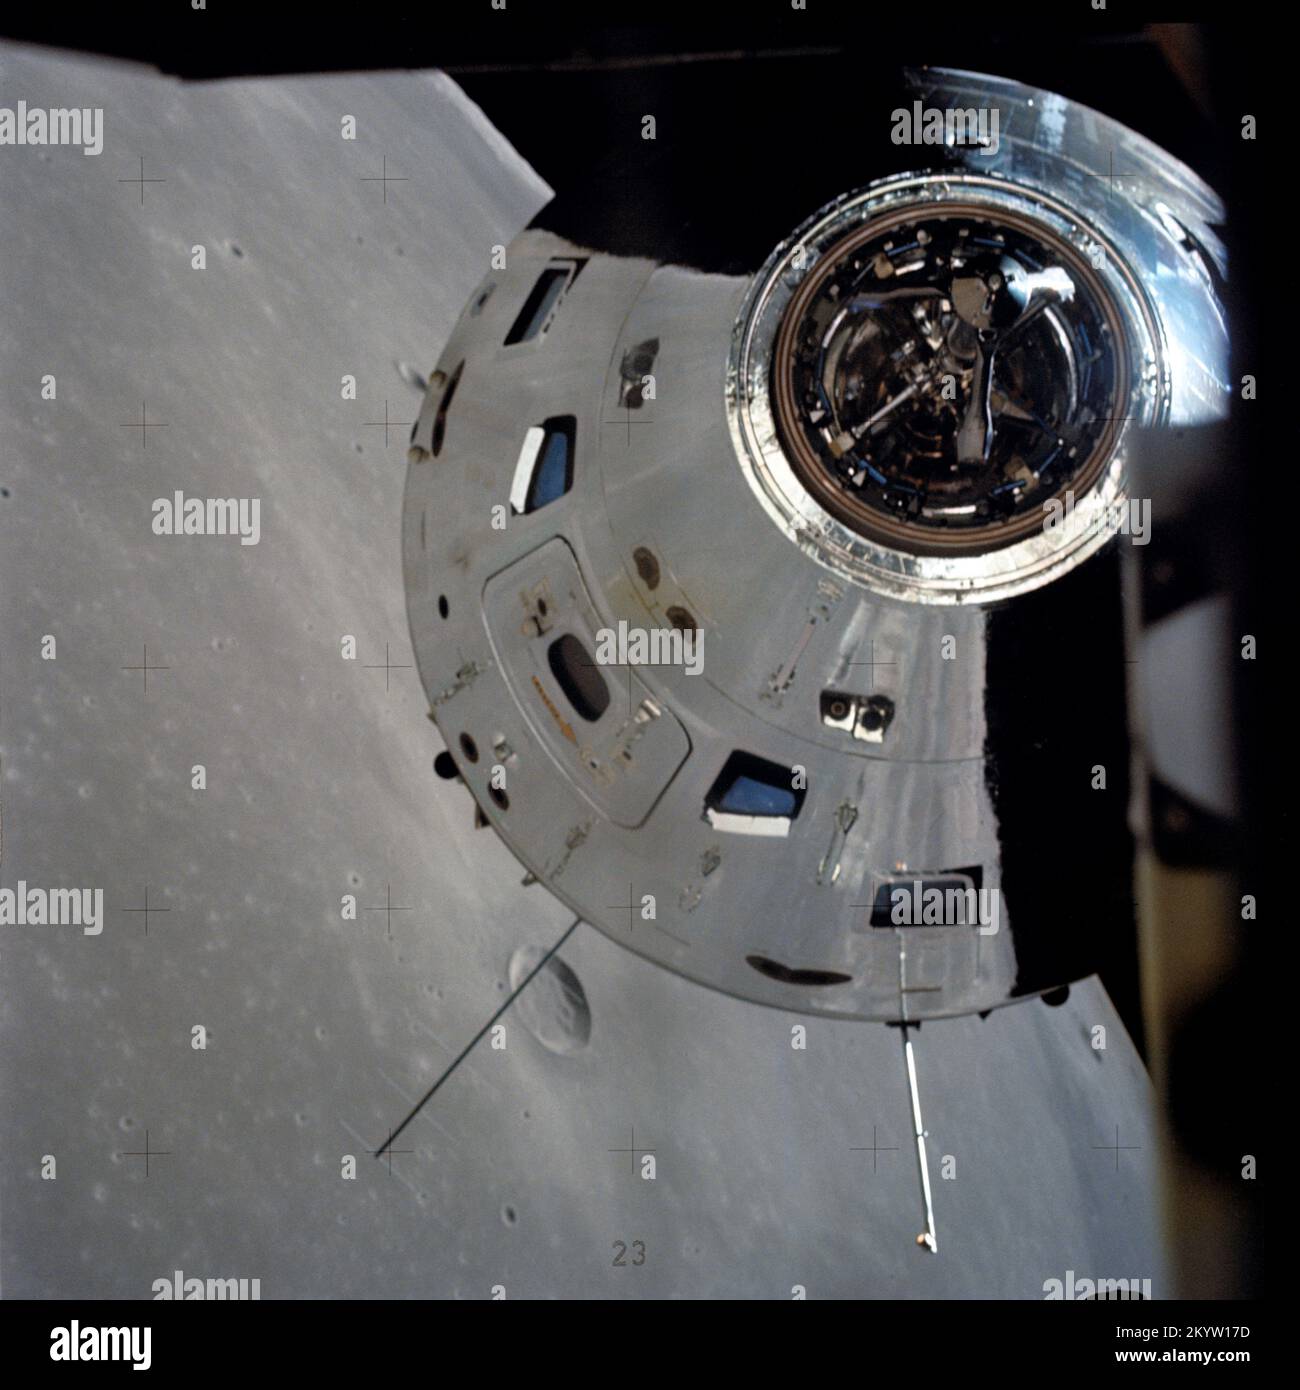 Apollo 17 Command/Service-Module, die vom Lunar-Modul in der Umlaufbahn fotografiert wurden, werden in dieser Ansicht vom Lunar-Modul (LM) und dem Command and Service-Modul (CSM) aufgenommen und bereiten sich auf ein Rendezvous mit dem LM vor. Beachten Sie die Reflexion der LUNAR-Oberfläche auf dem CSM. Der CSM wird von Ronald E. Evans gesteuert, während Astronauten Eugene A. Cernan, Commander, und Harrison W. Schmitt, Pilot des Mondmoduls, an Bord der LM sind und ihre außerfahrbaren Aktivitäten (EVA) auf der Mondoberfläche verfolgen. 14. Dezember 1972 Stockfoto